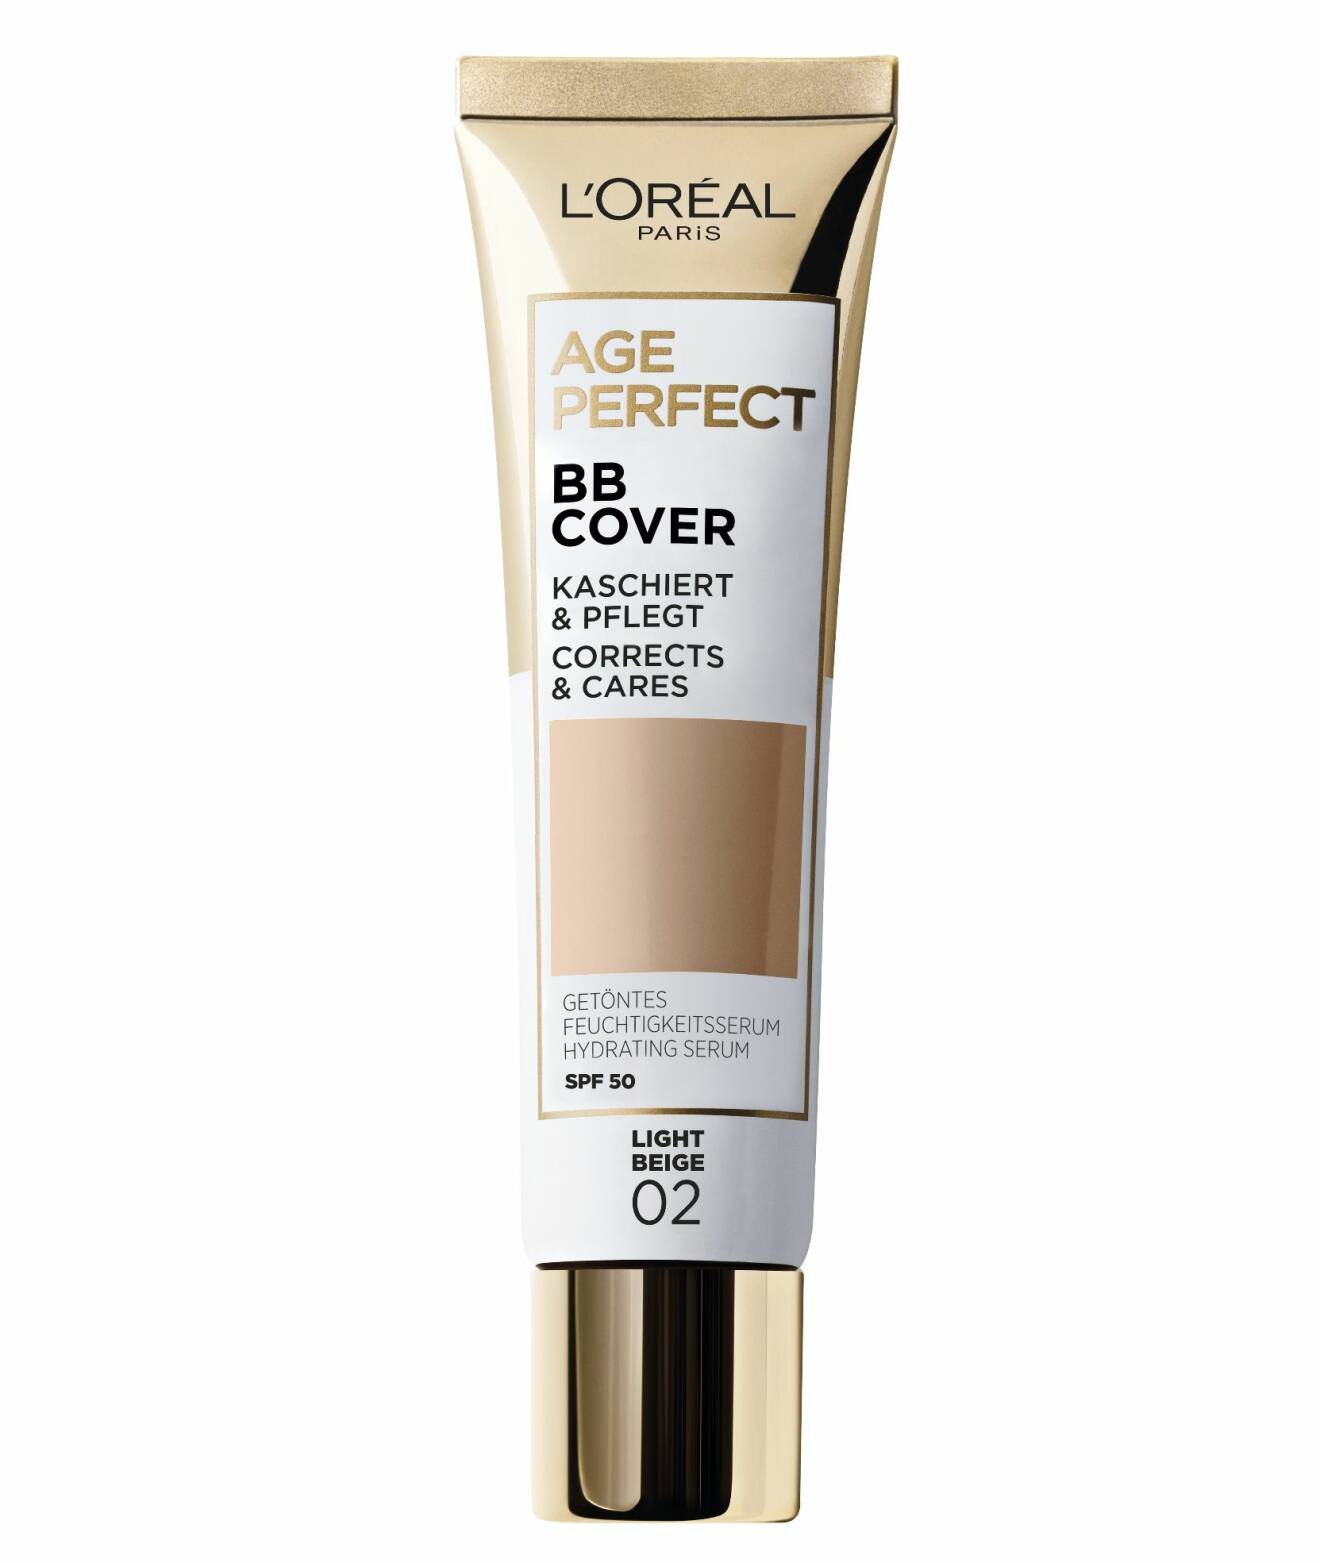 Age Perfect Makeup BB Cover från L'Oréal Paris.